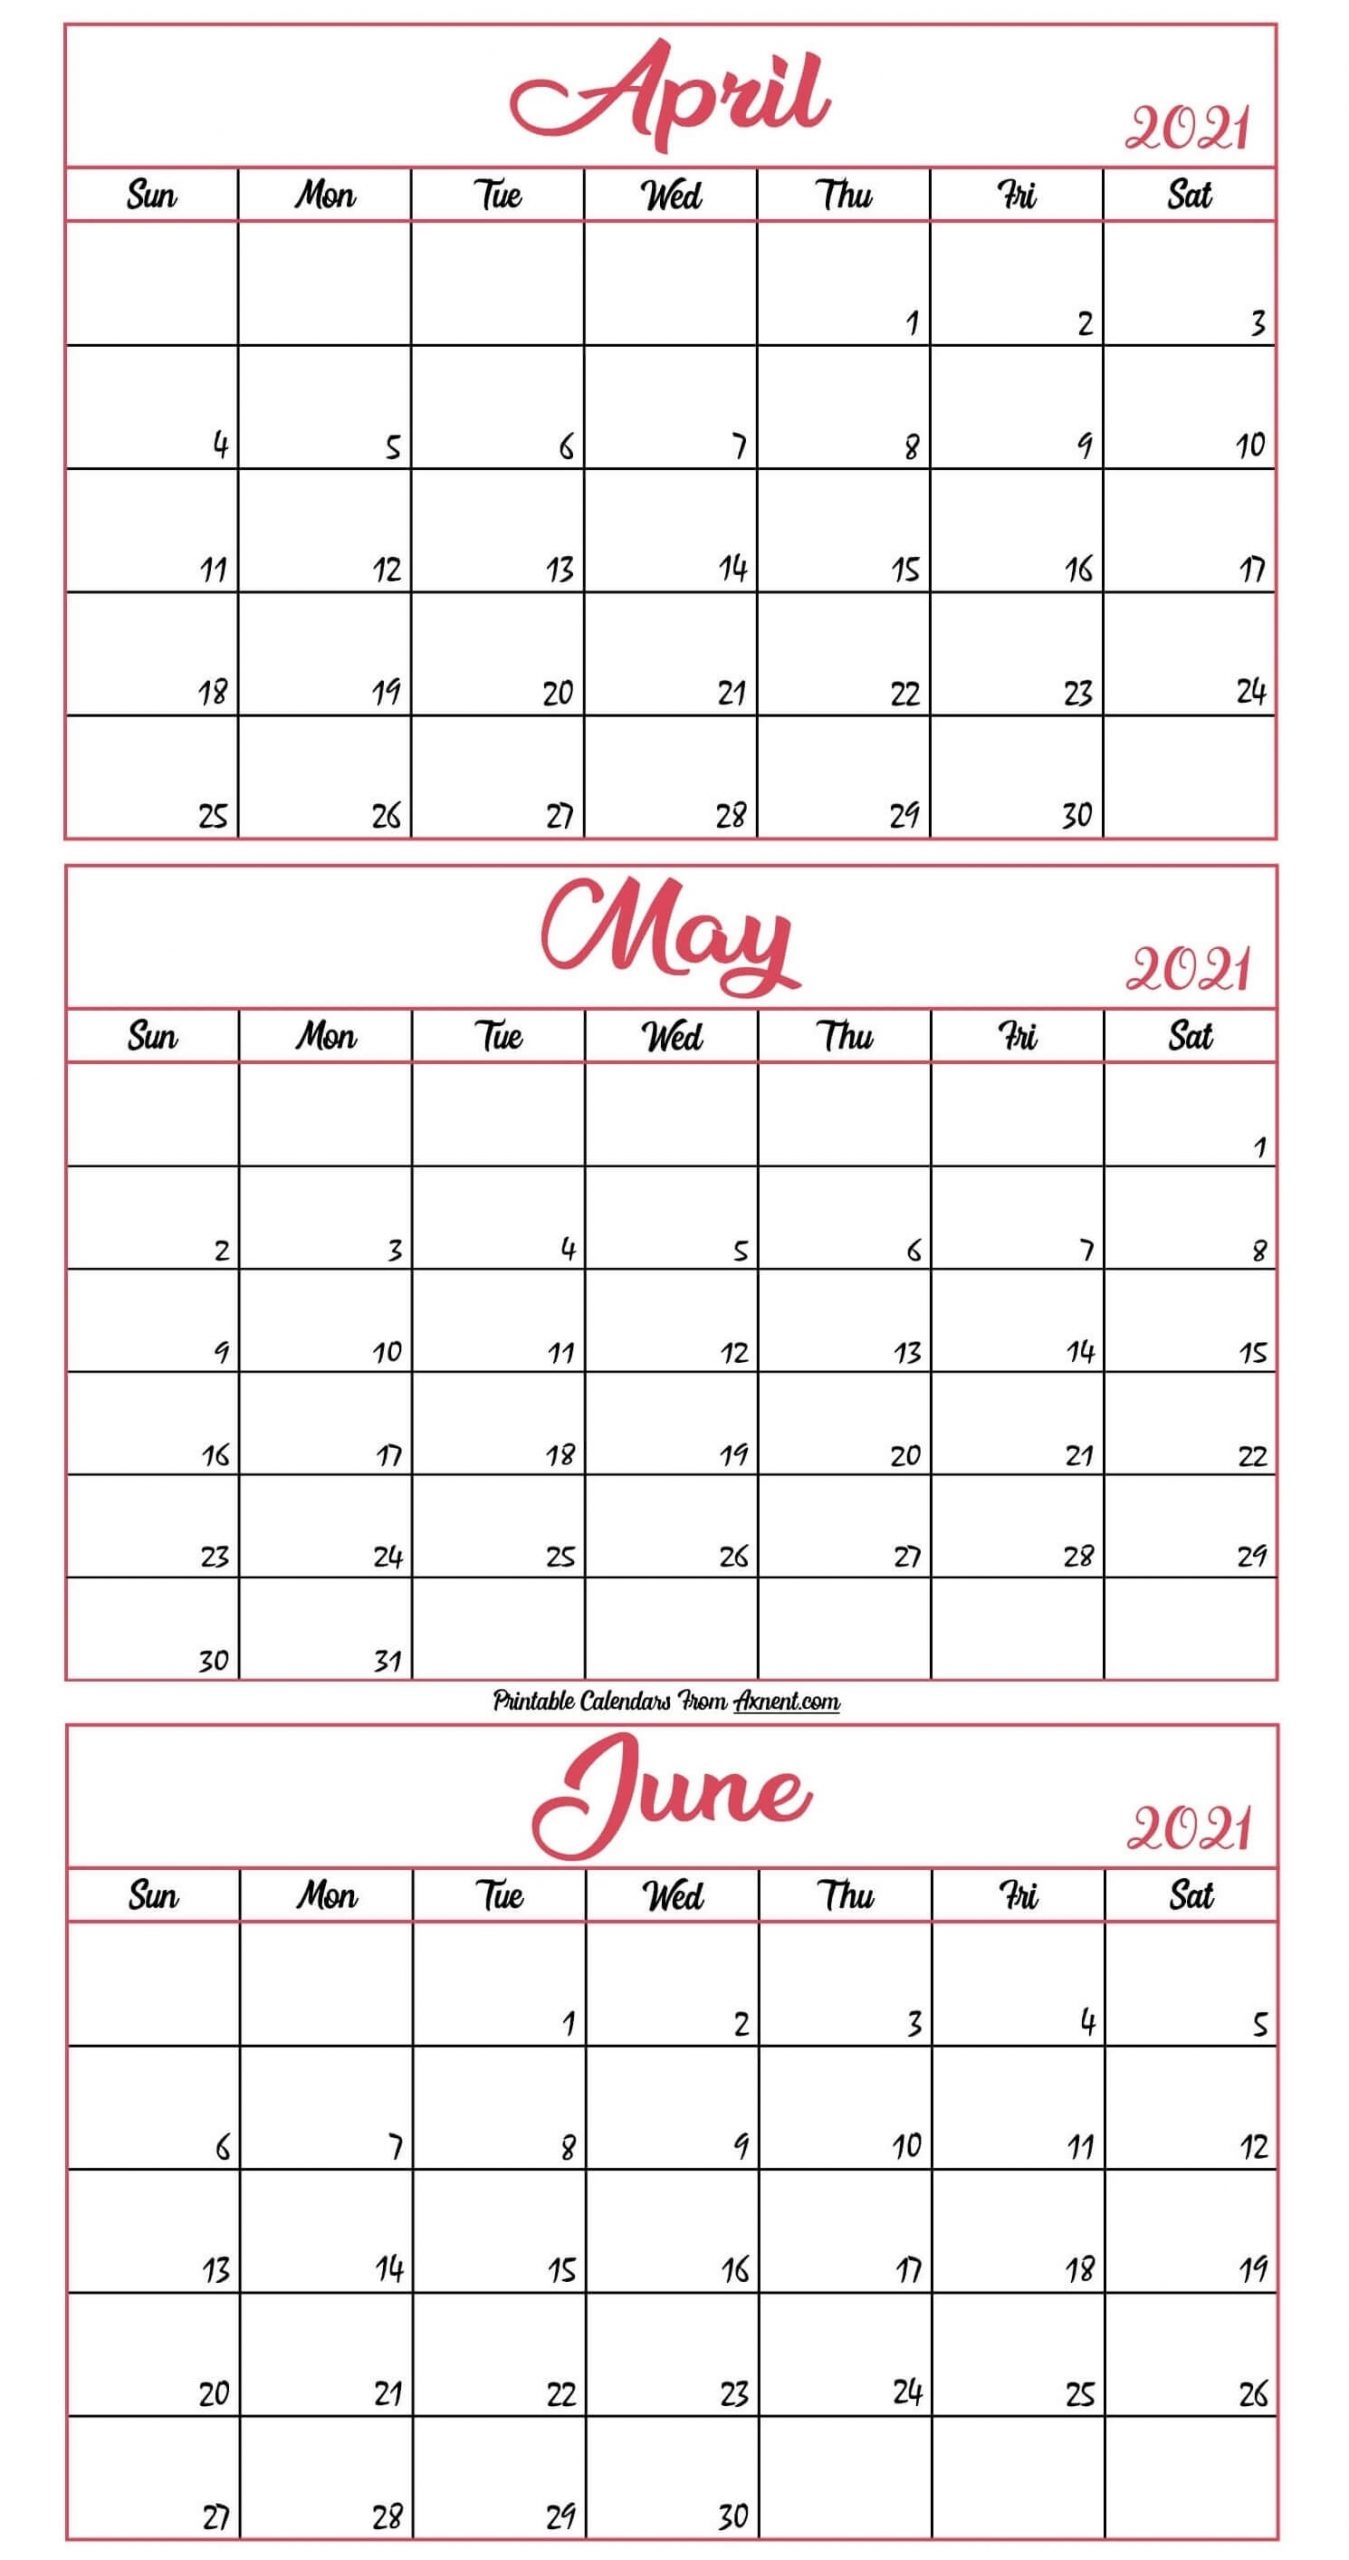 April To June Calendar 2021 Templates - Time Management Tools April To June Calendar 2021 Templates April - June 2021 Calendar